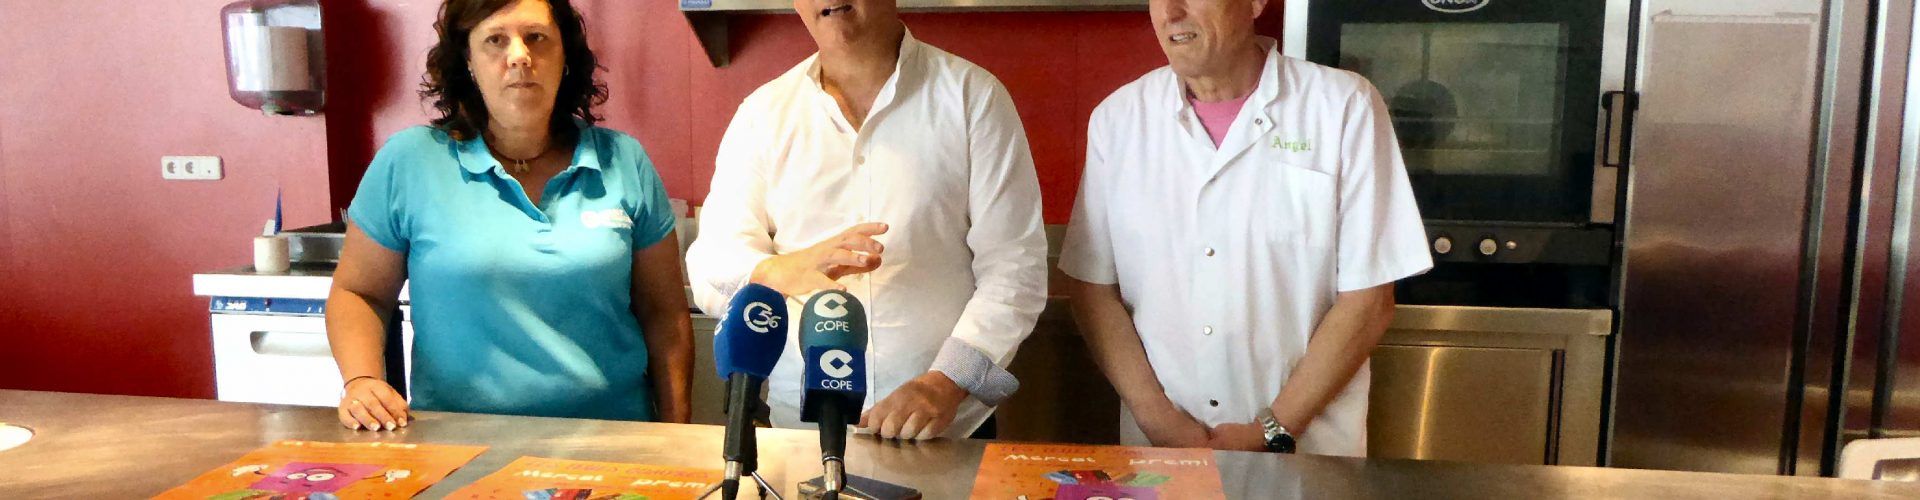 Comerç presenta la nova campanya de xecs regal del Mercat Municipal